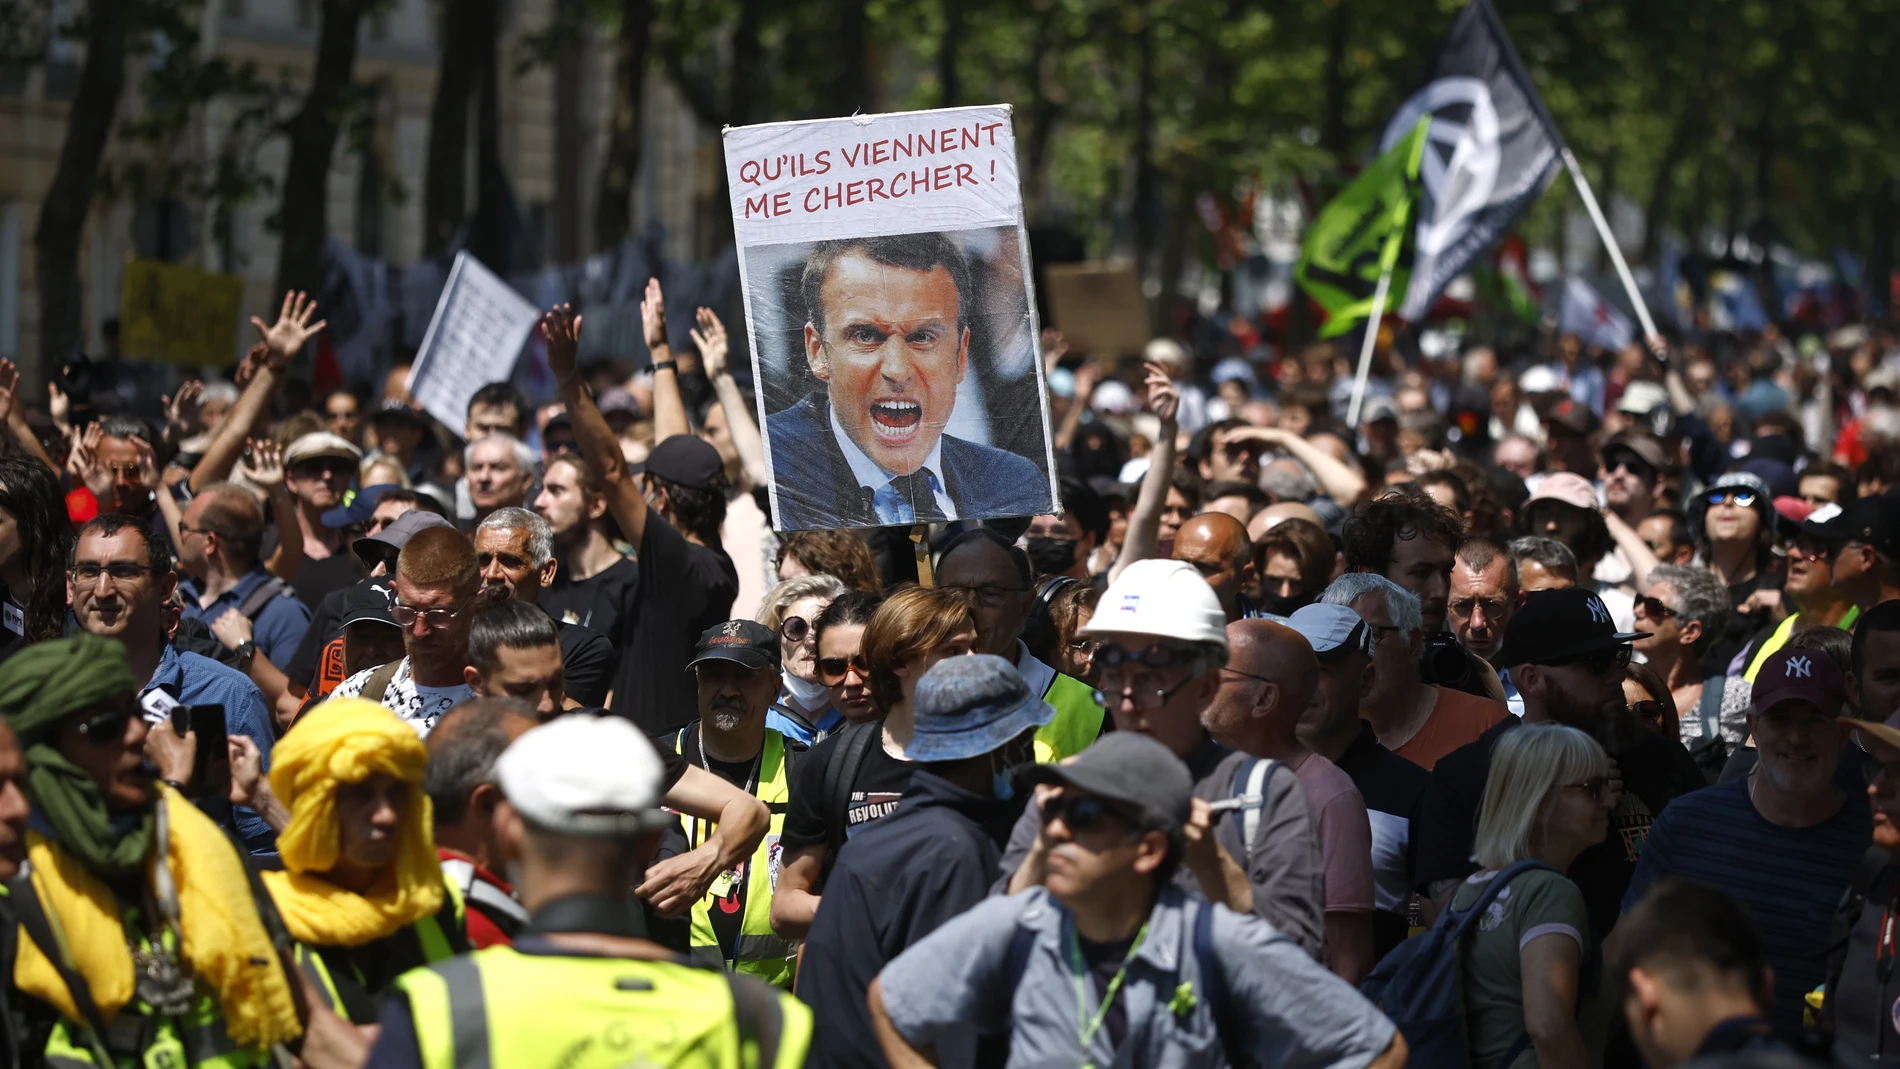 -FOTODELDÍA- PARÍS, 06/06/2023.- Manifestantes sostienen un cartel con la cara del presidenta francés, Emmanuel Macron, durante una manifestación de protestas contra la reforma gubernamental del sistema de pensiones, este martes en París. EFE/YOAN VALAT